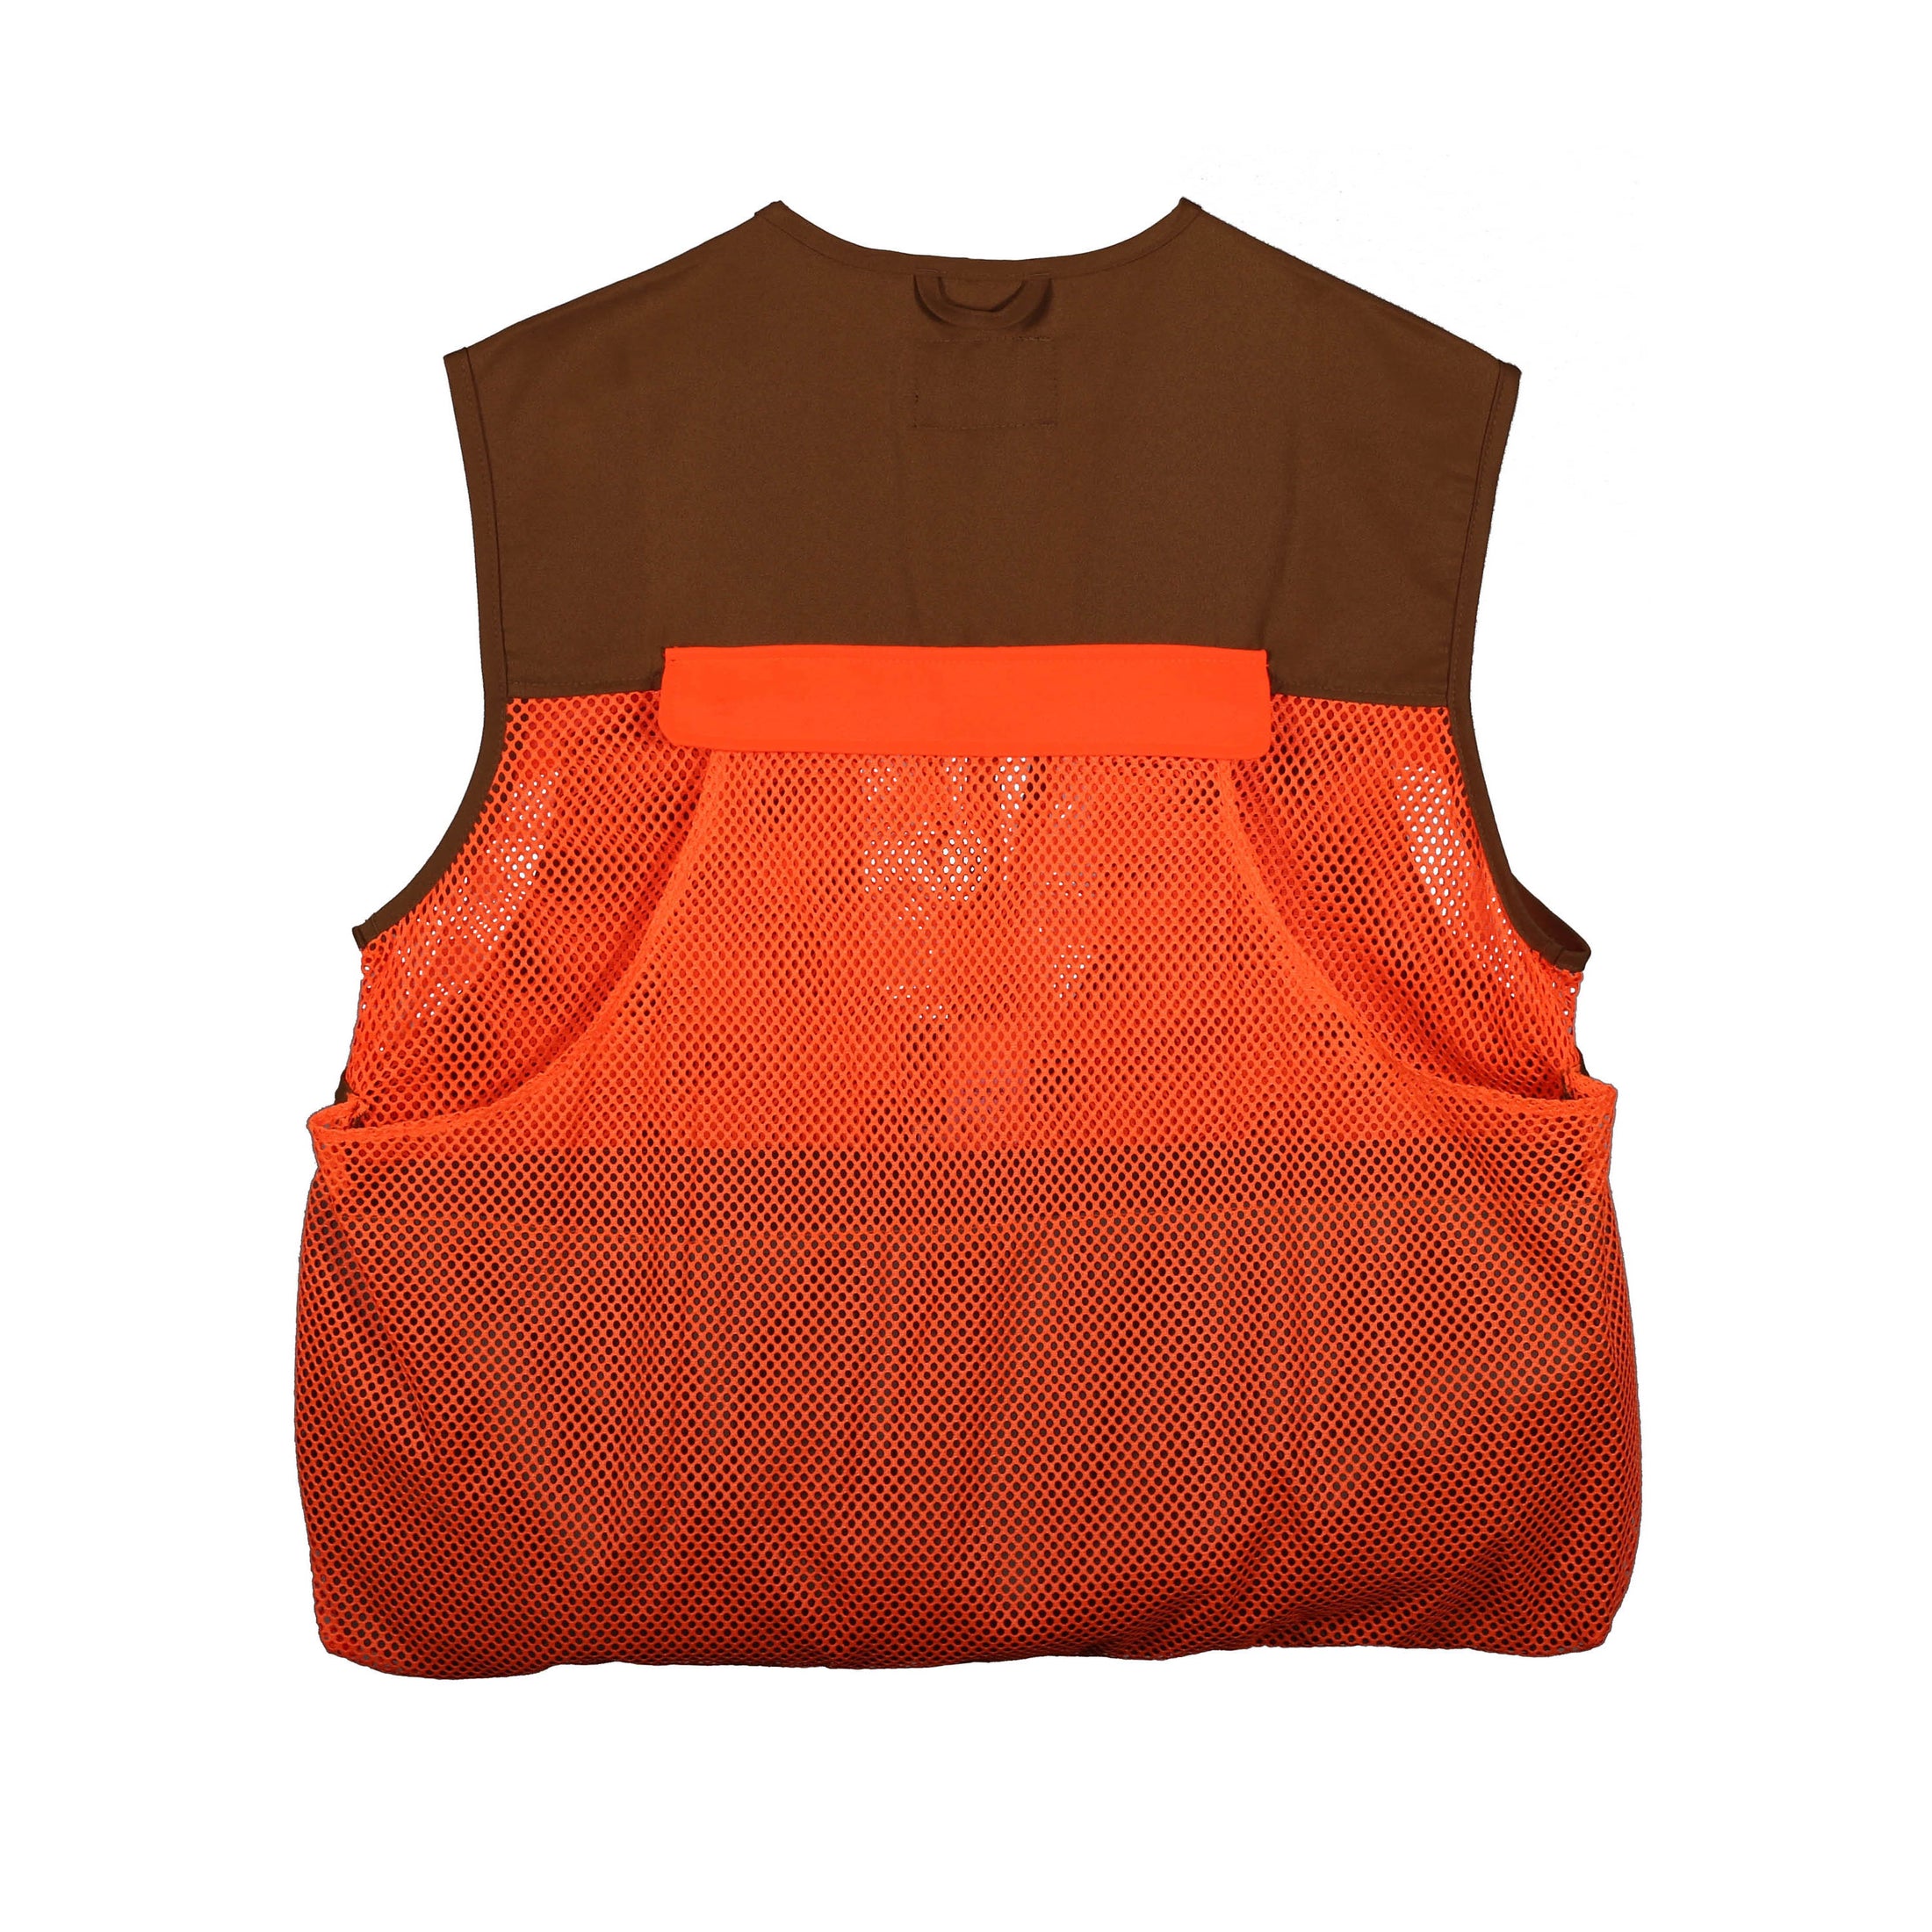 gamehide Quail Vest back (marsh brown/orange)